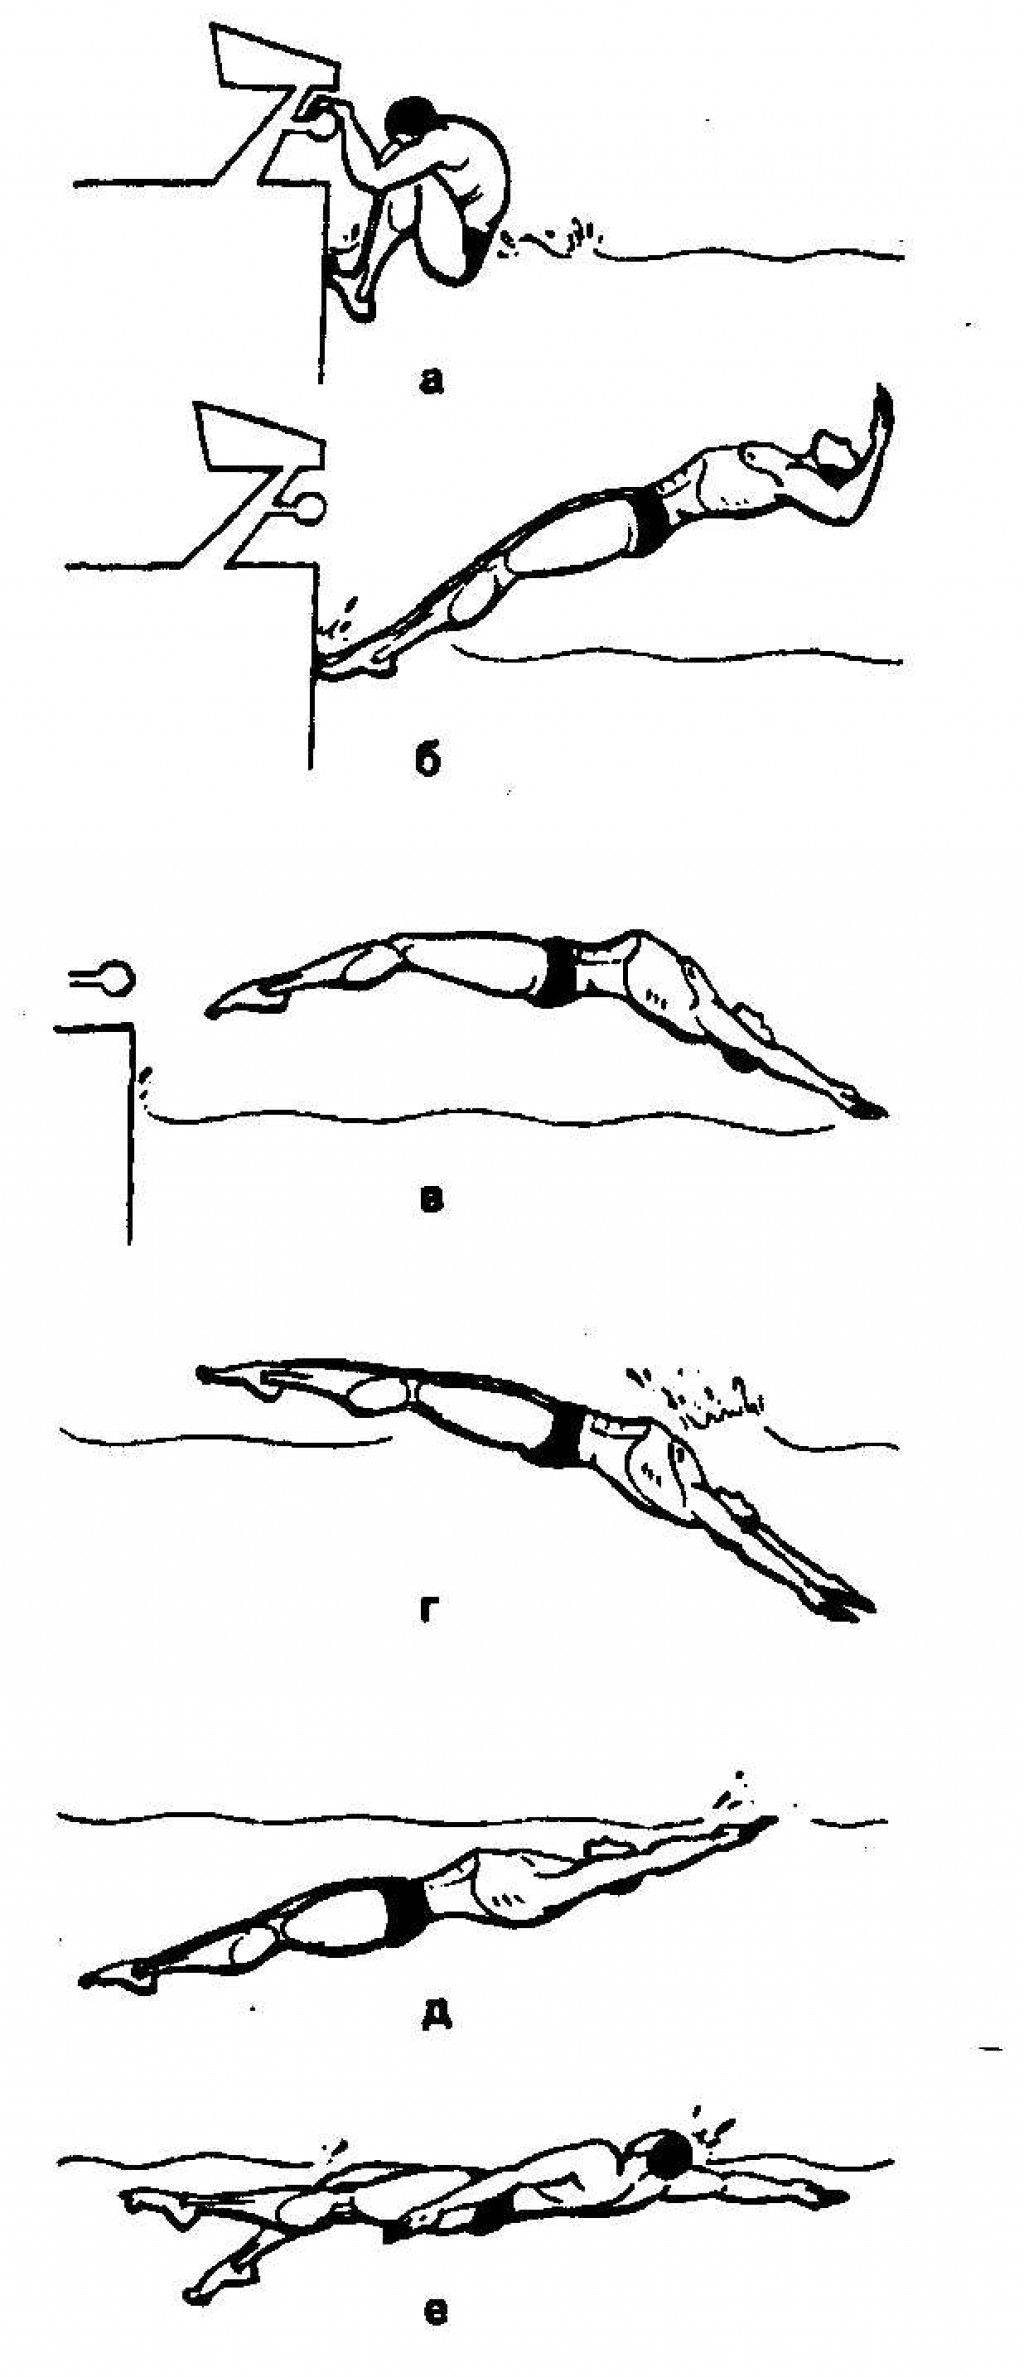 Старт в плавании: техника прыжка с тумбочки в кроле на груди и из воды на спине, правила и виды, видео